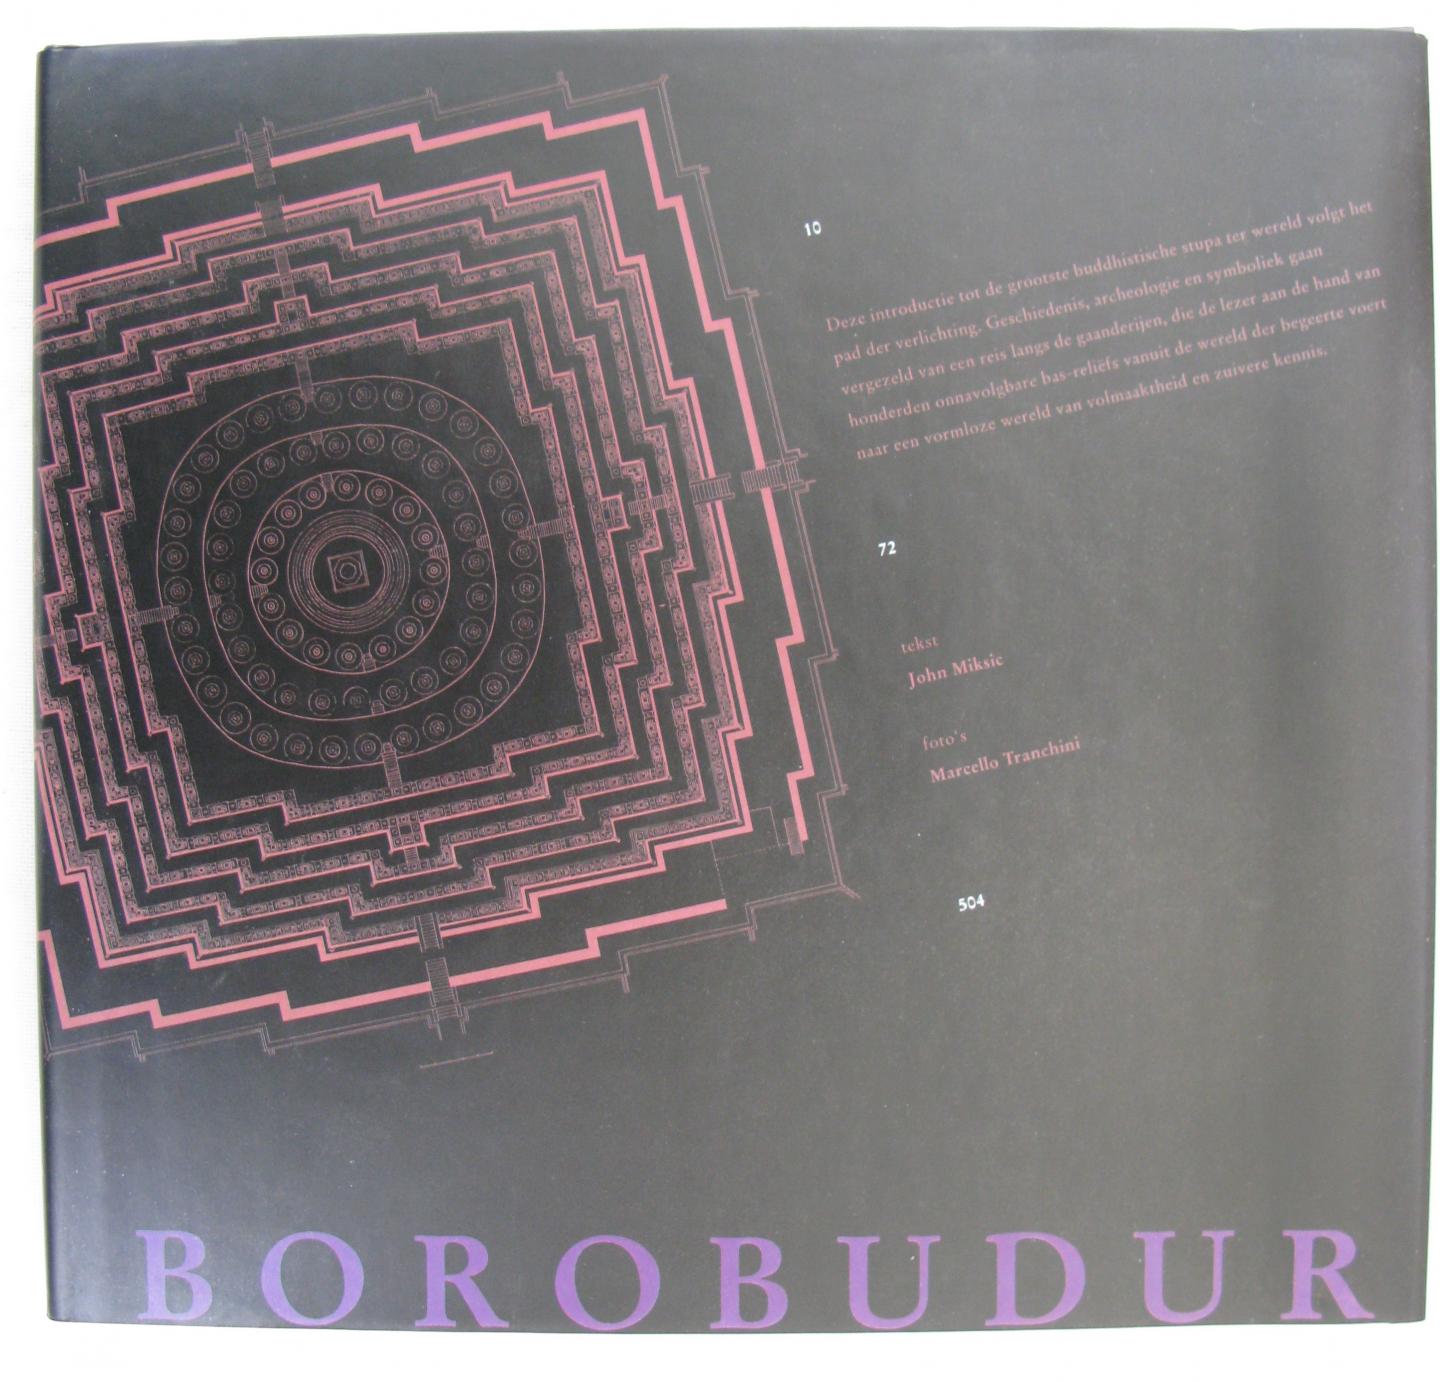 Miksic, John - Borobudur